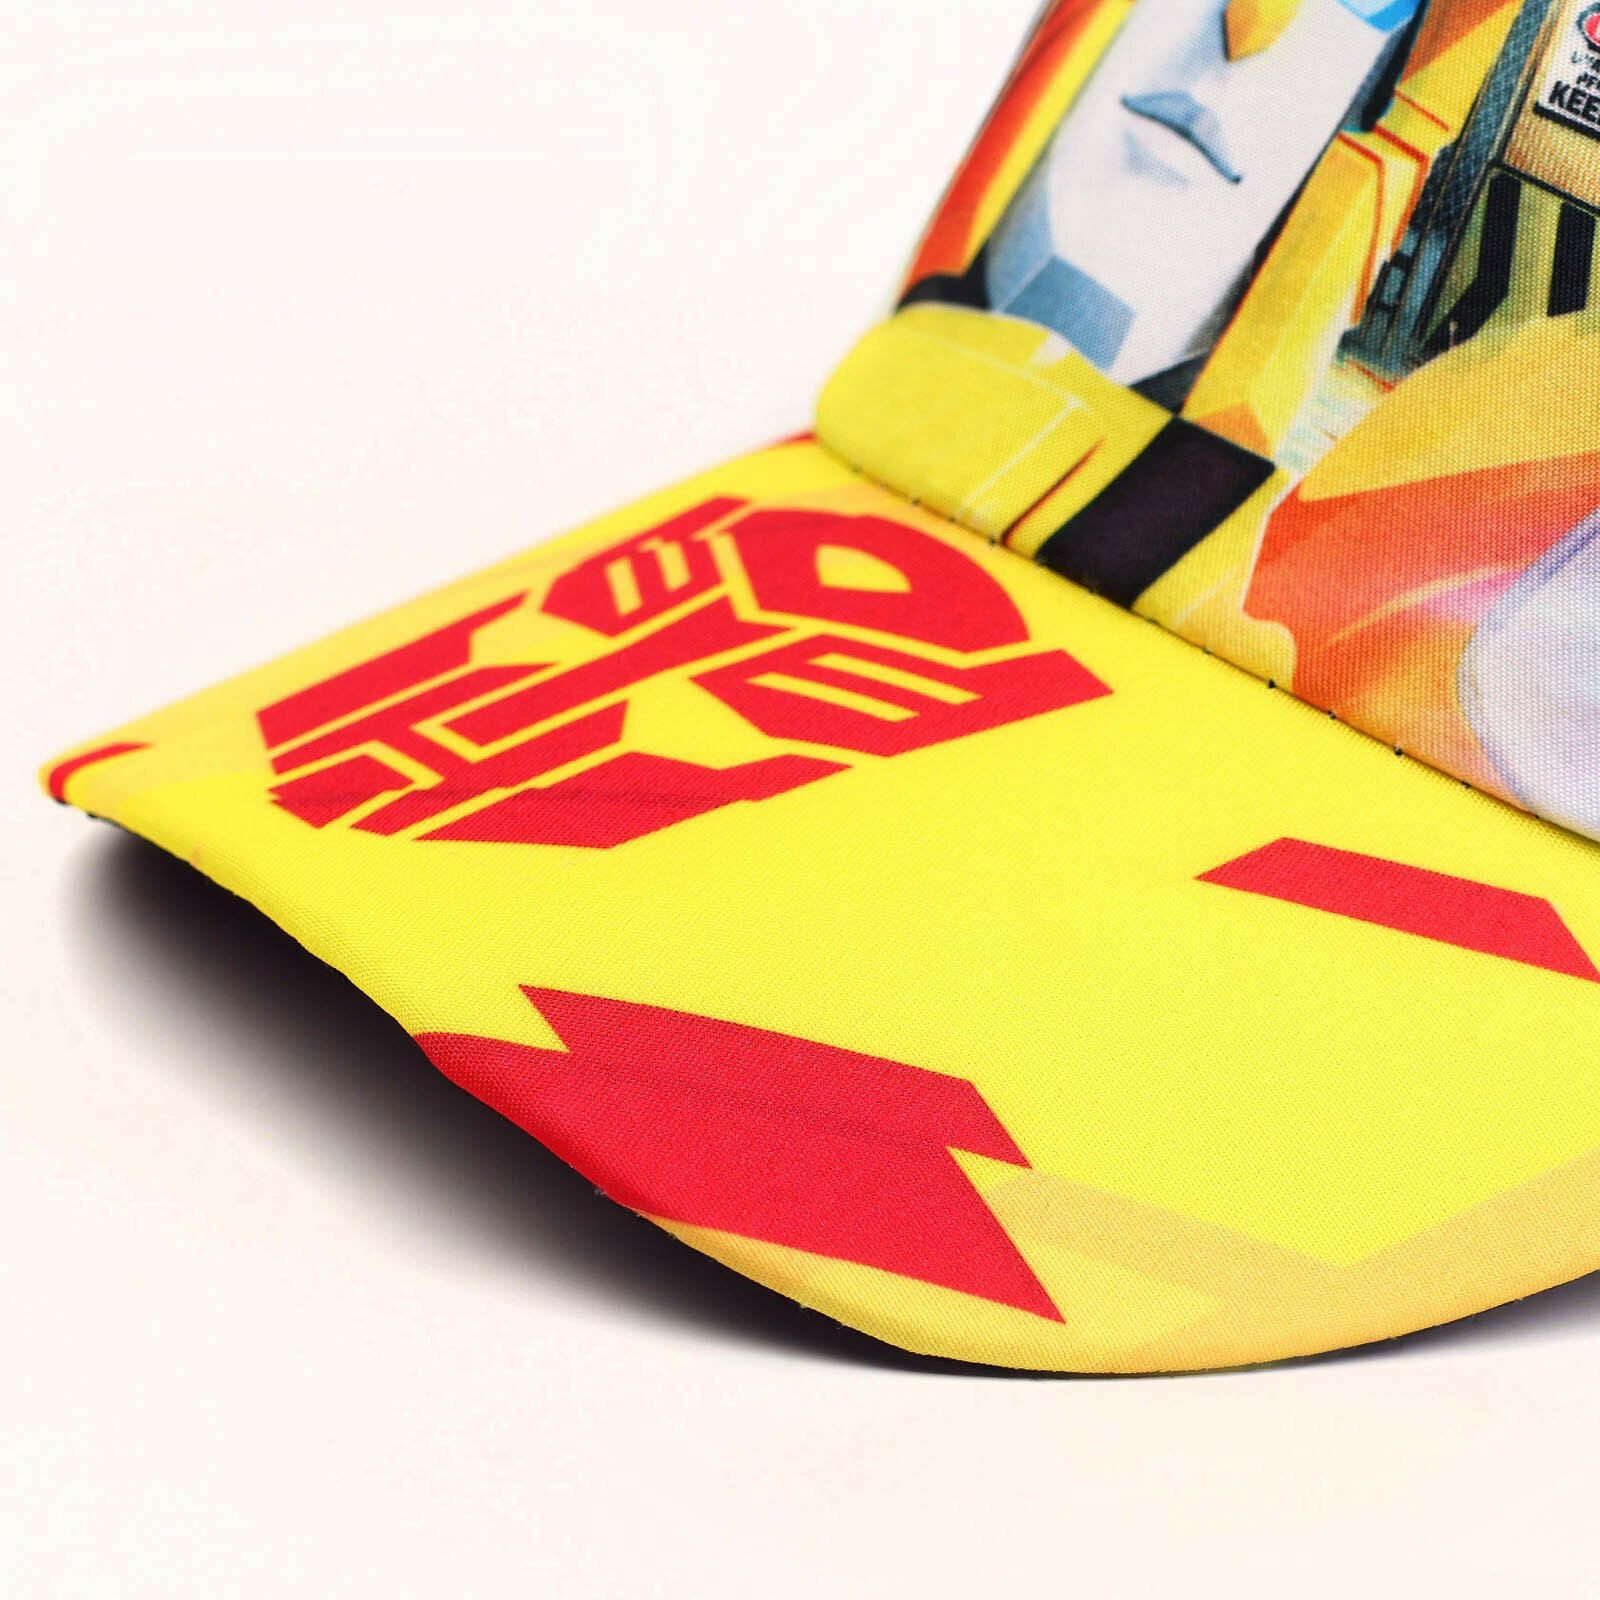 Кепка Hasbro Трансформеры, размер 52, белый, желтый